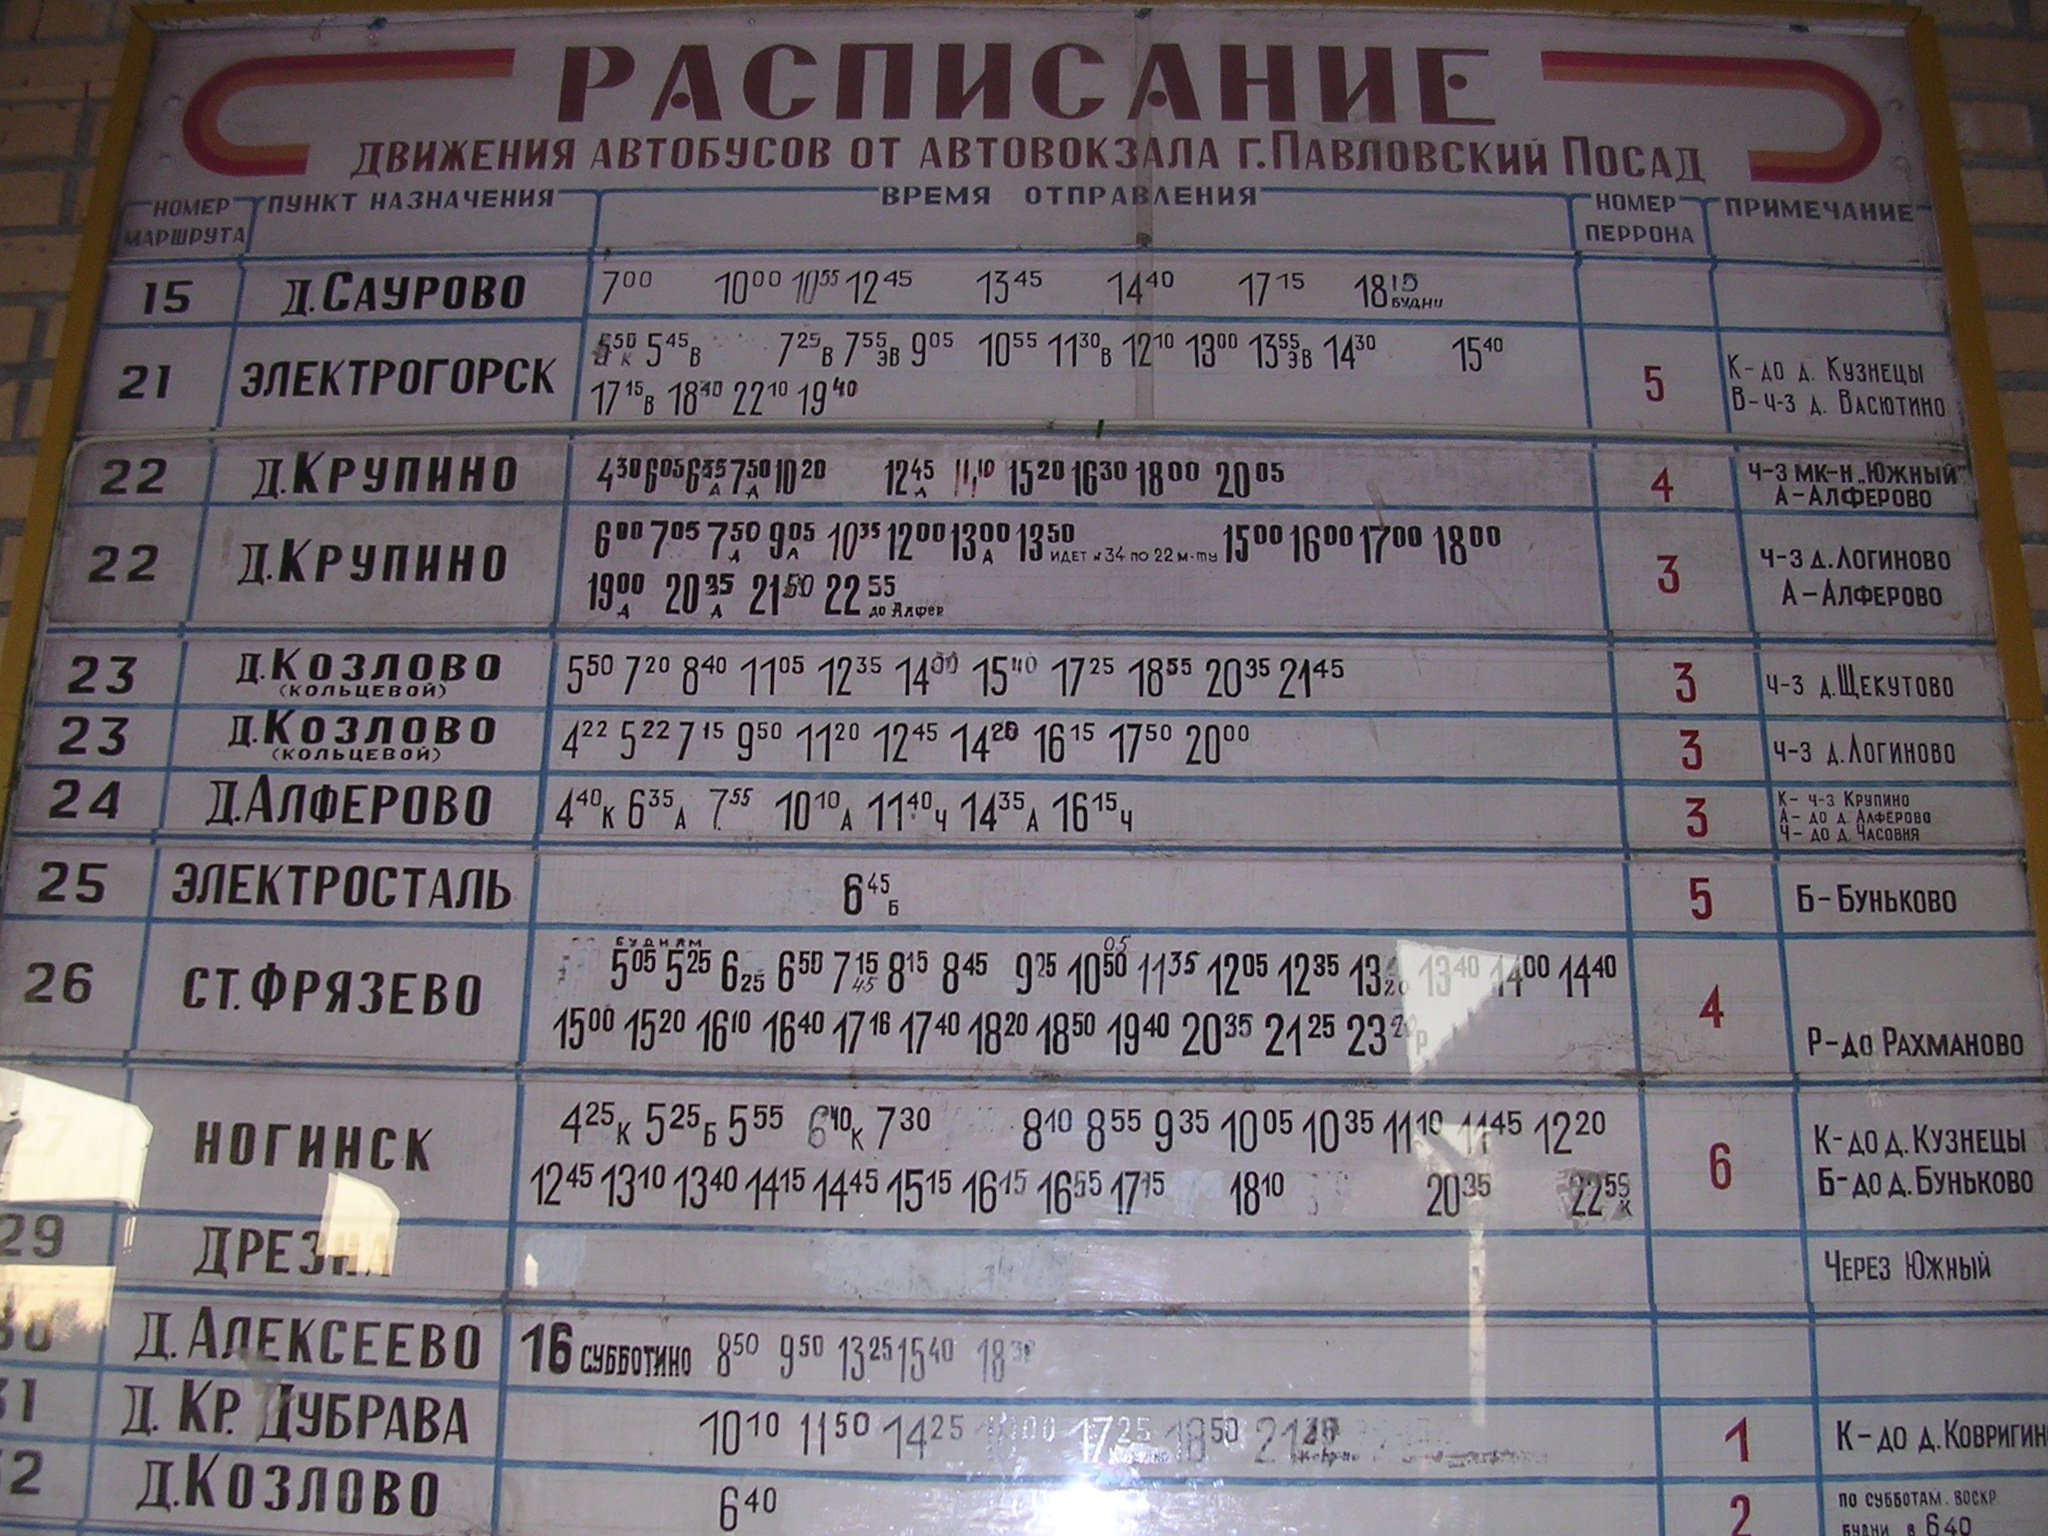 Автобус 56 рахманово павловский